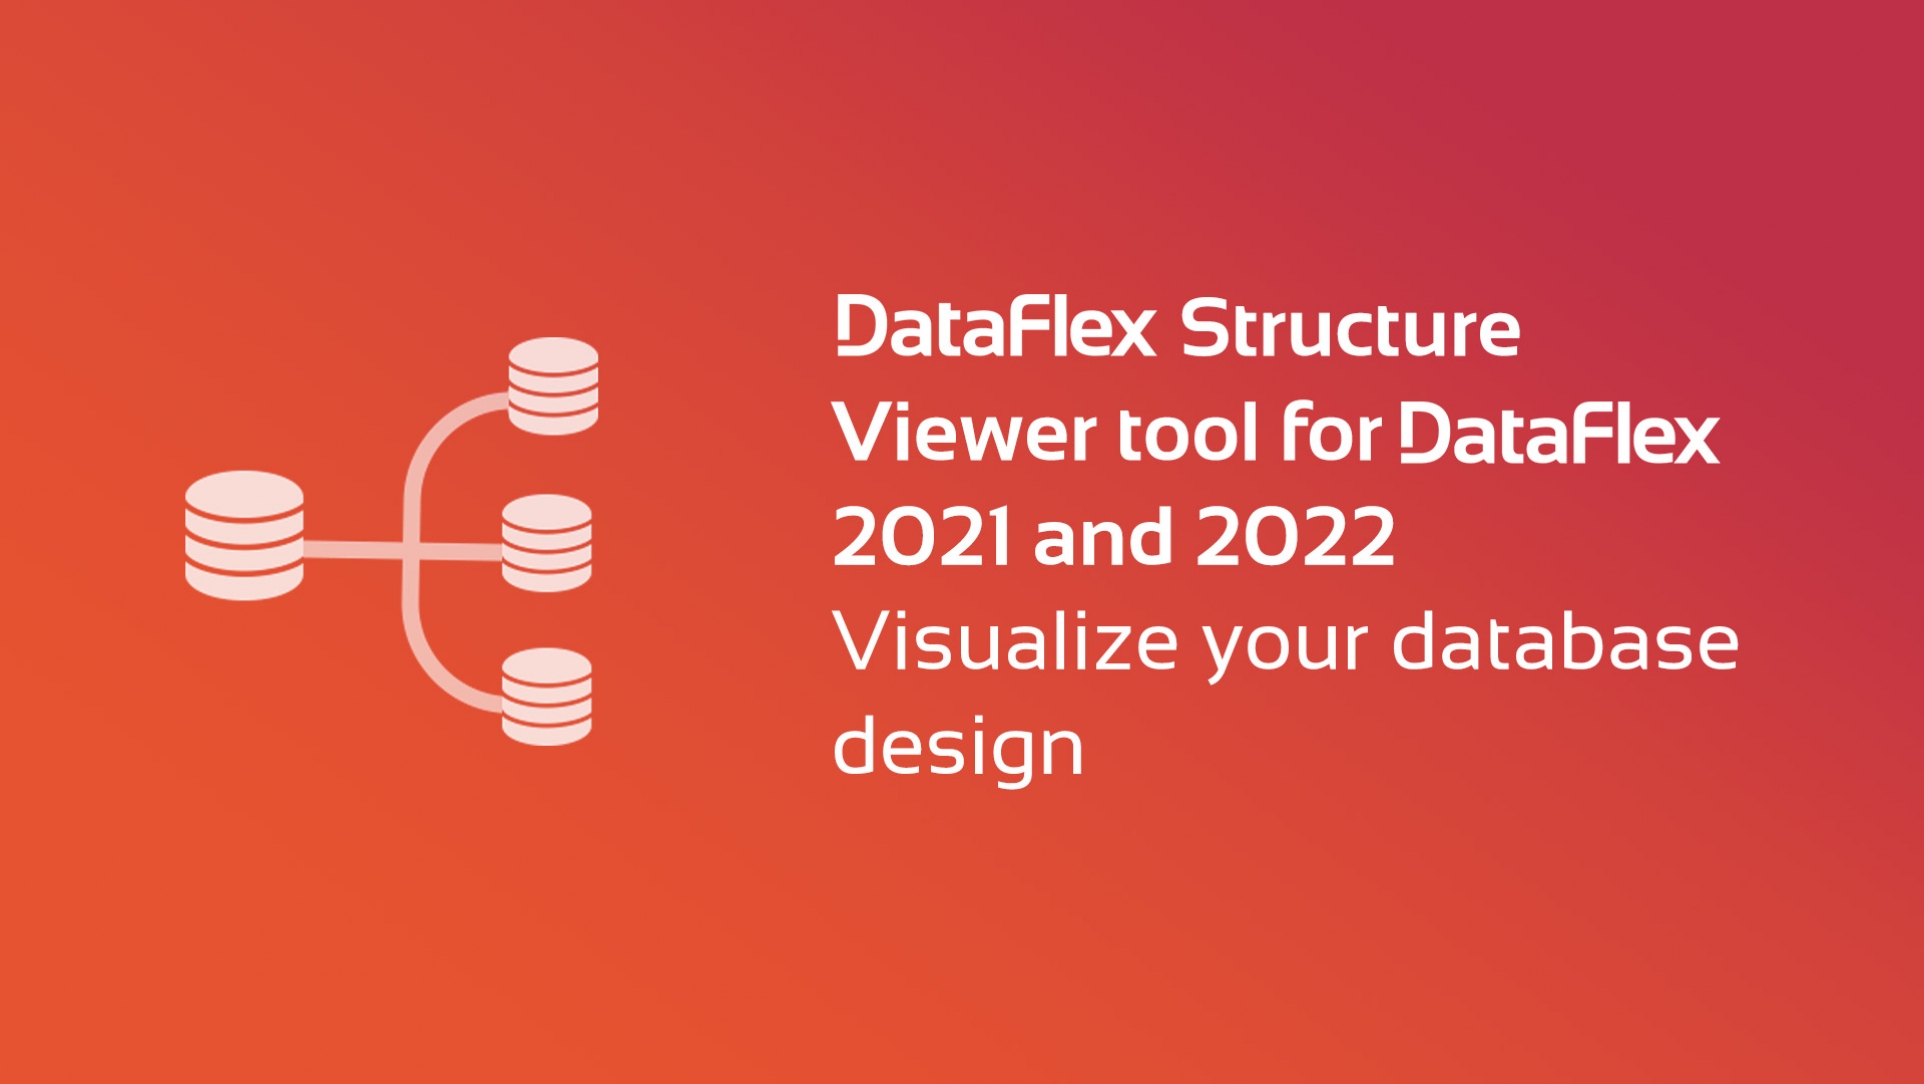 DataFlex Structure Viewer tool